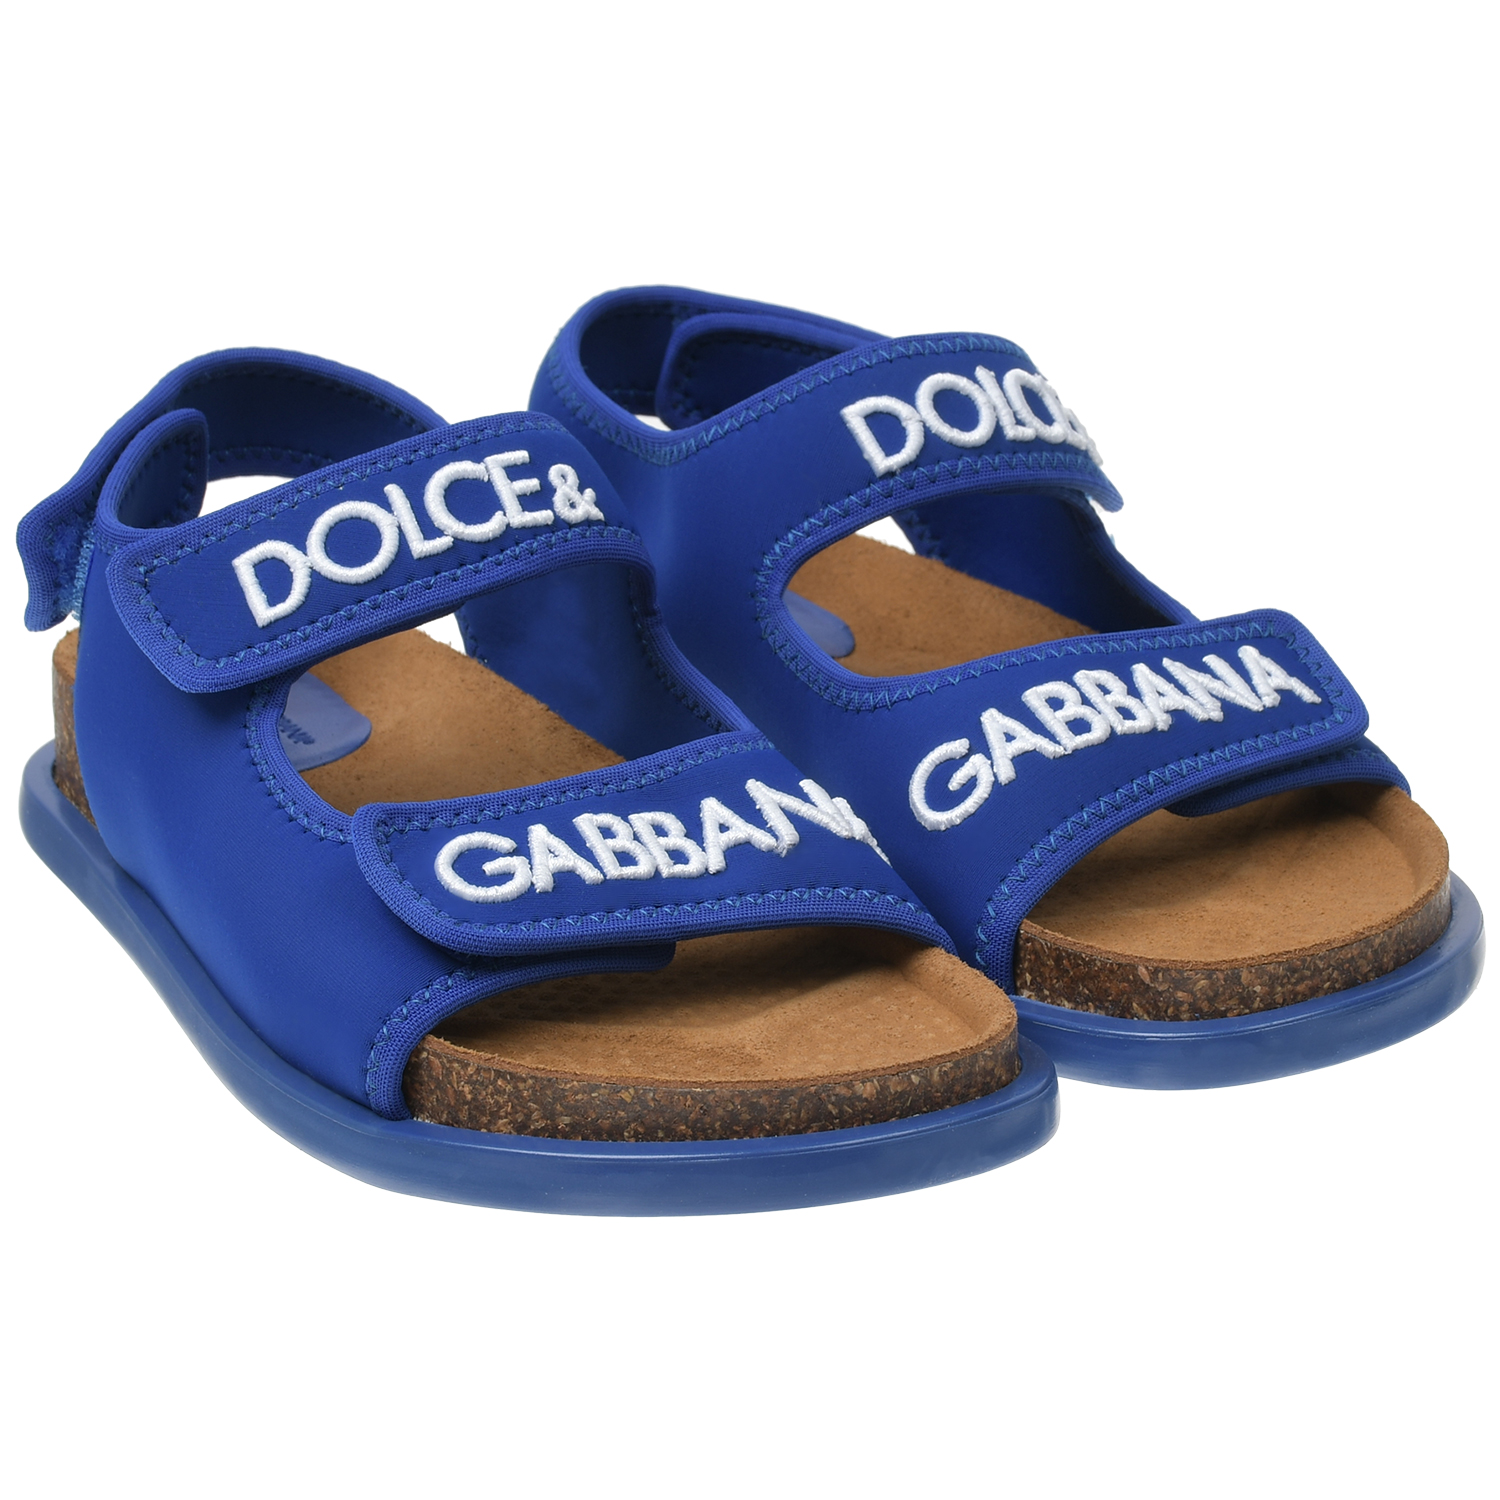 Ярко-синие сандалии с белым лого Dolce&Gabbana нарукавники волейбольные 2 шт mikasa mt415 029 ярко синие